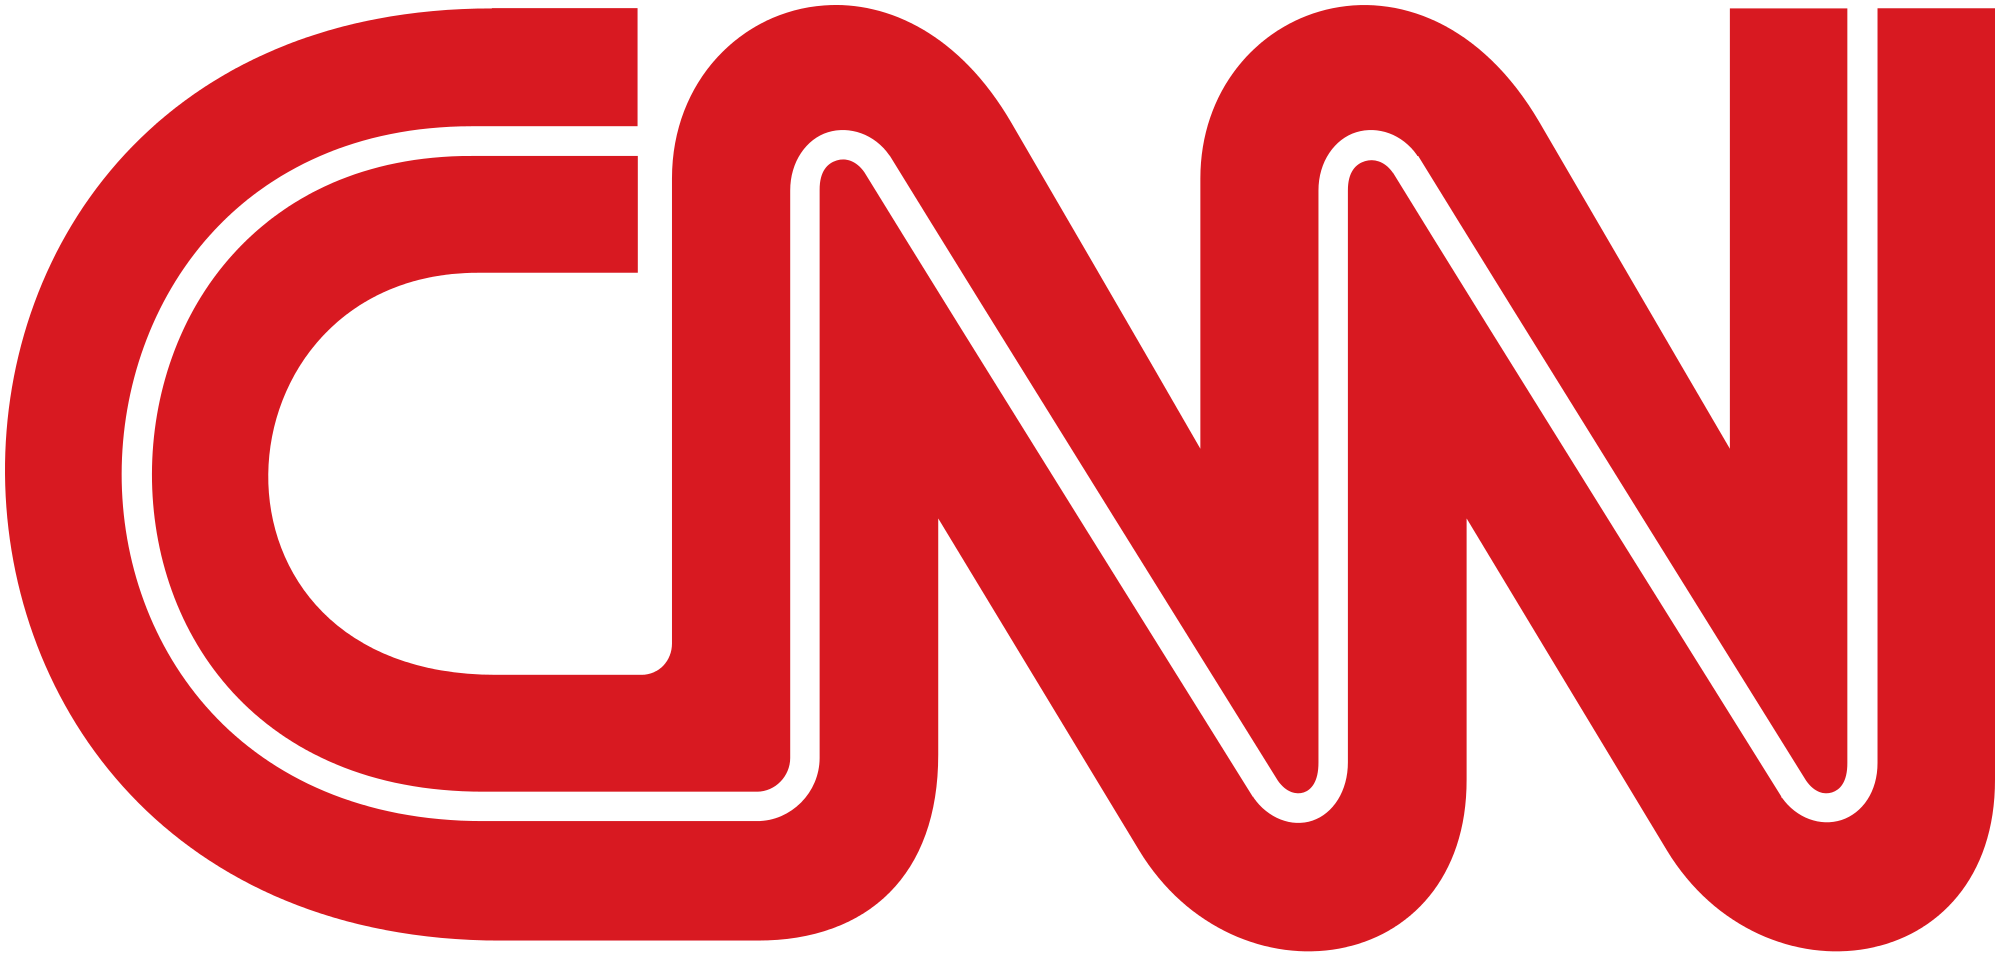 Cnn-logo.png